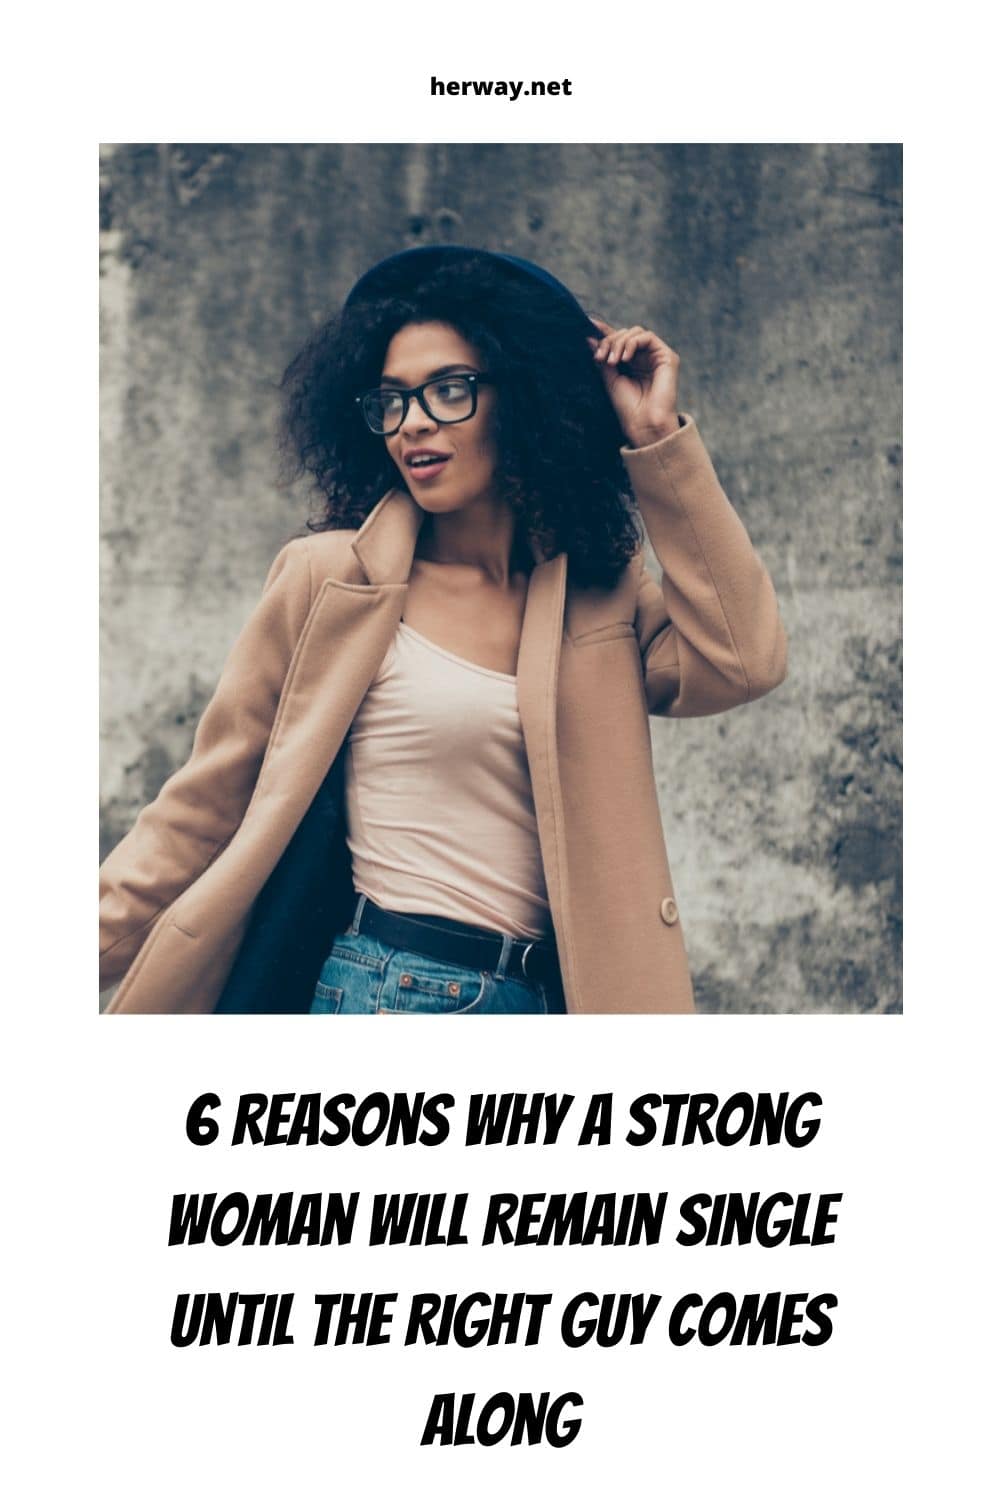 6 motivi per cui una donna forte rimane single finché non arriva l'uomo giusto